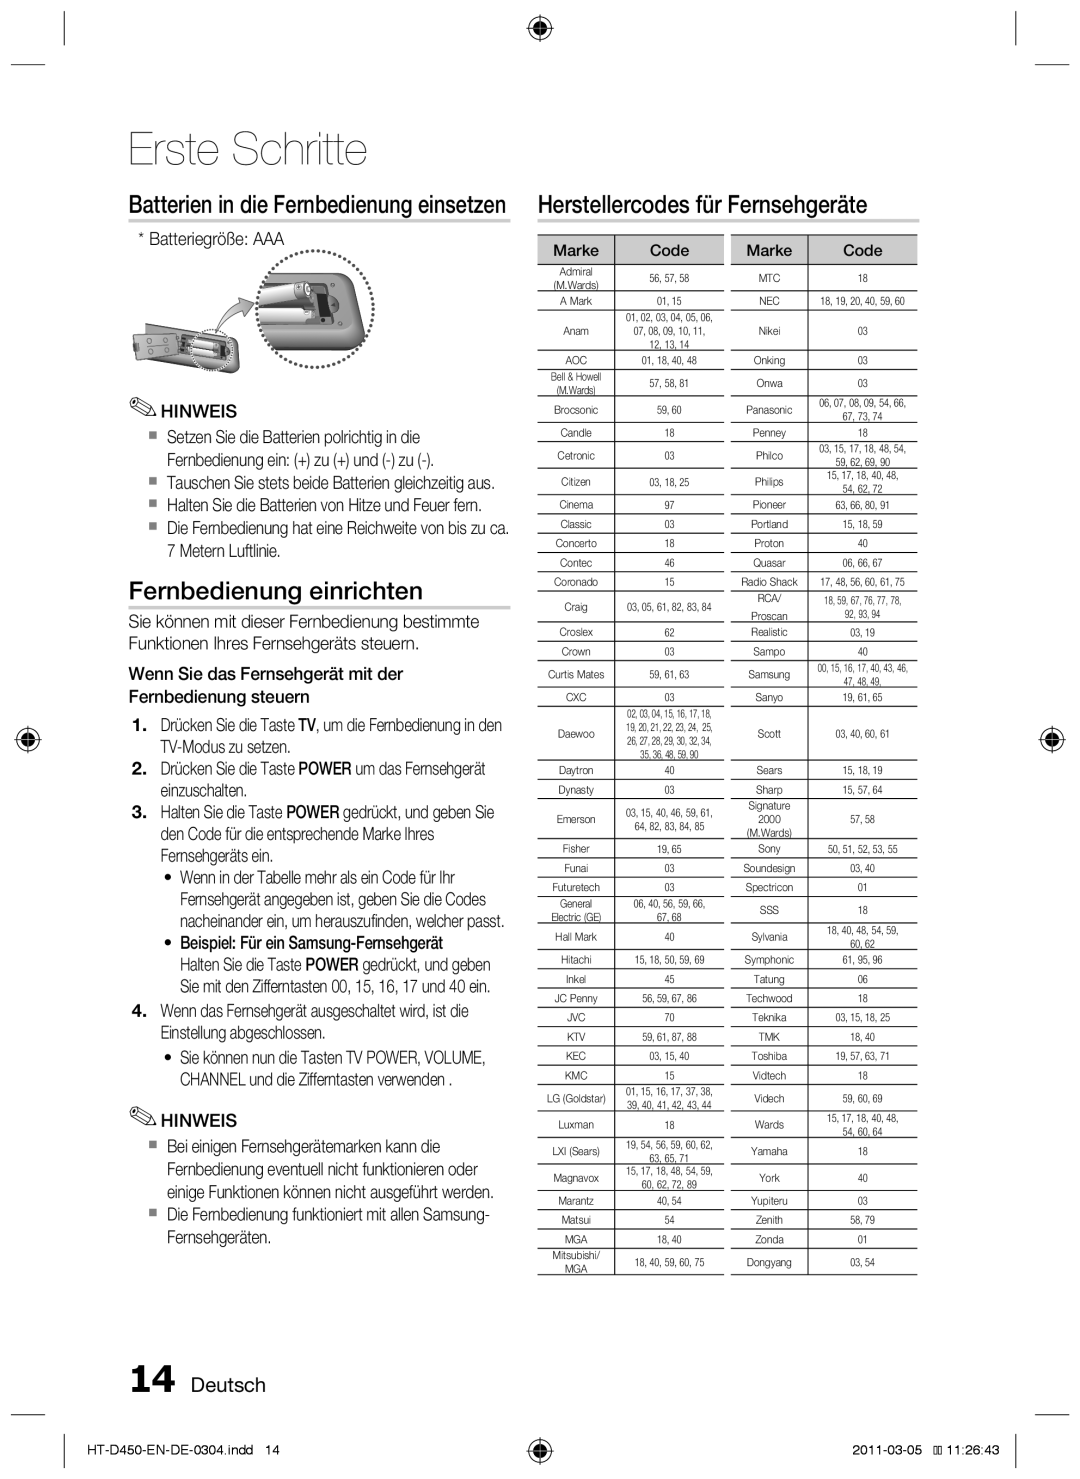 Samsung HT-D453 Herstellercodes für Fernsehgeräte, Fernbedienung einrichten, Batterien in die Fernbedienung einsetzen 